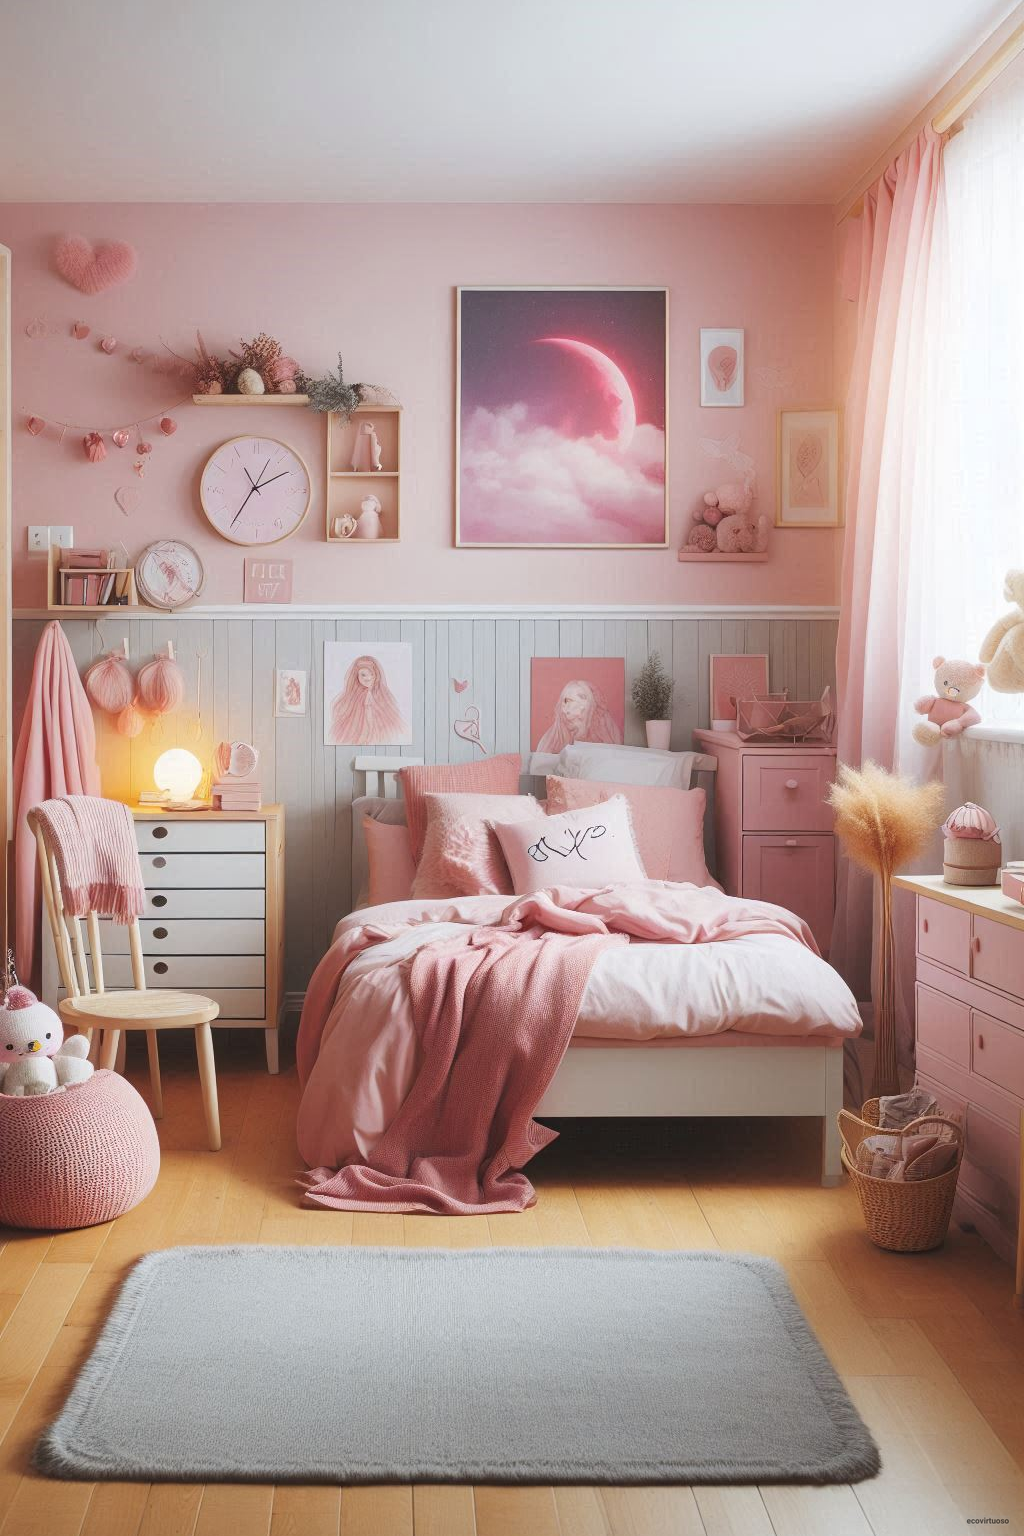 a minimalist bedroom